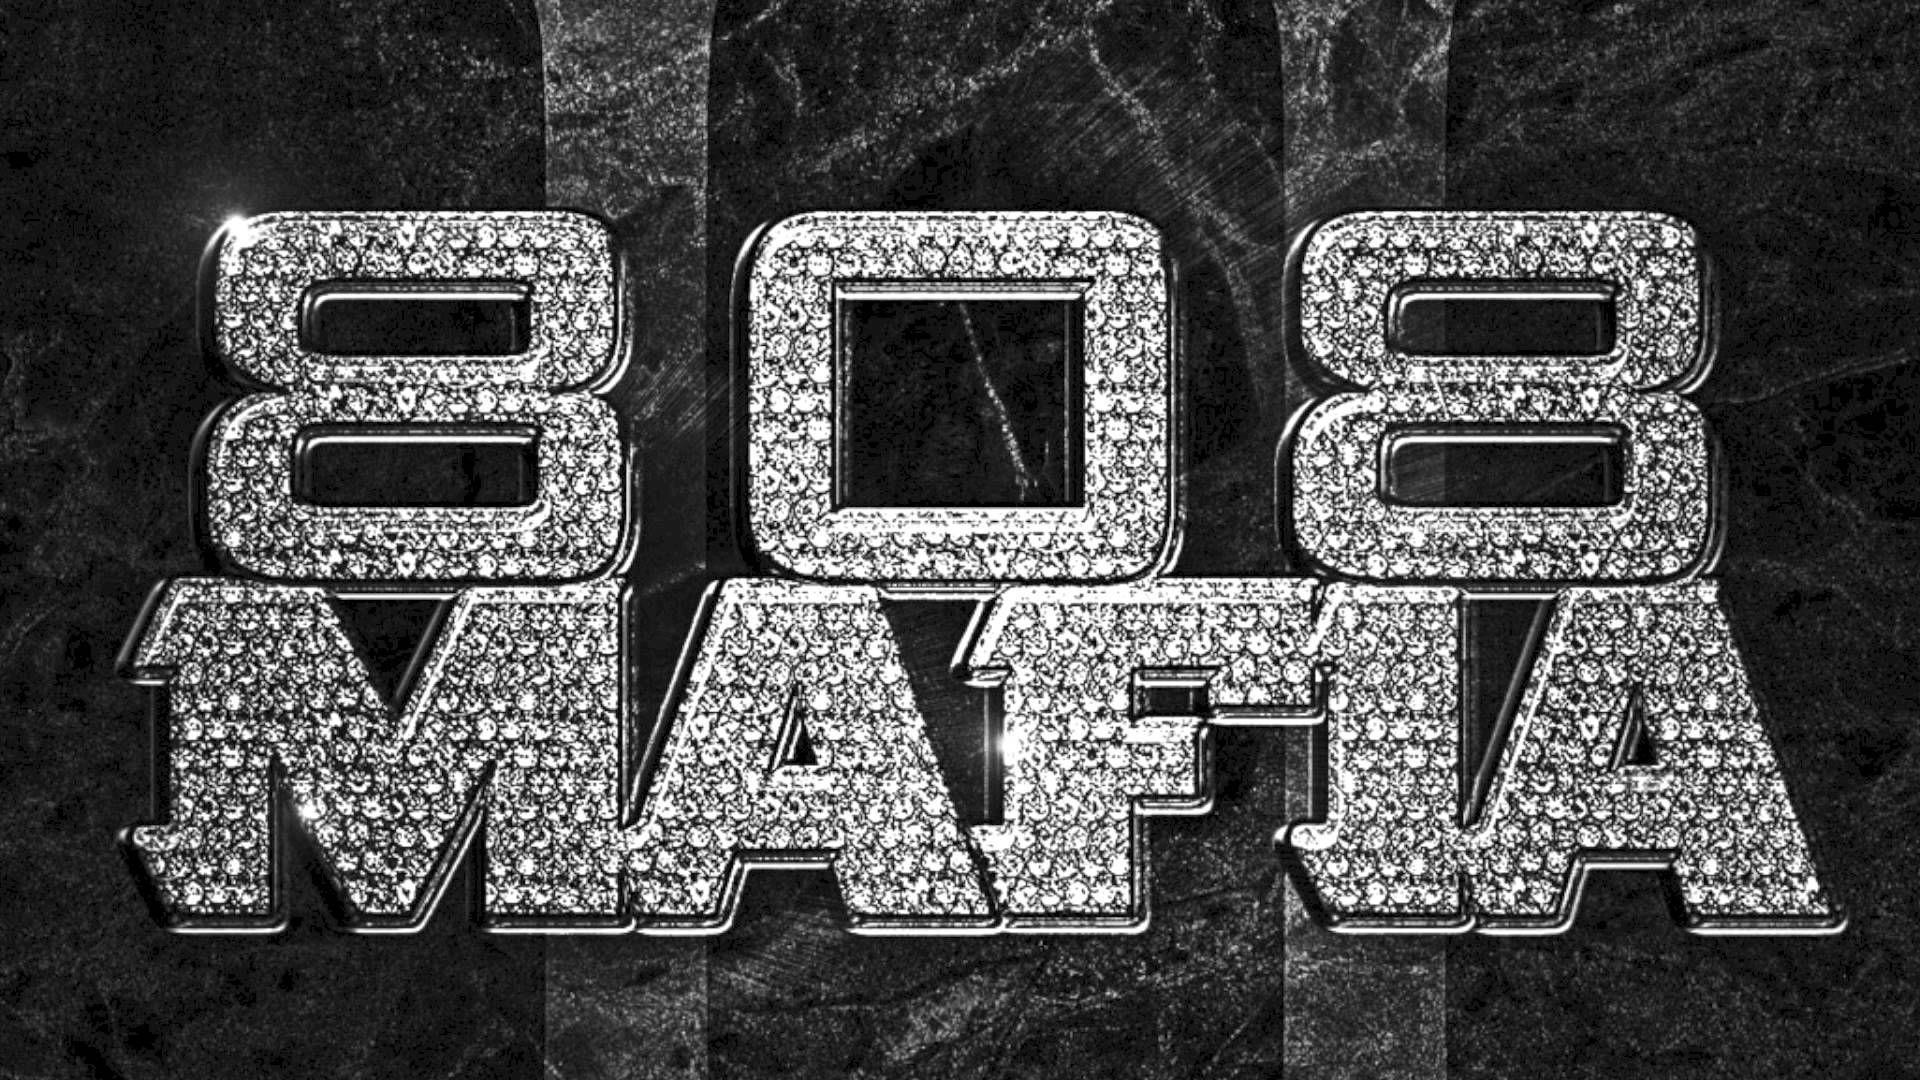 808 Mafia Wallpapers - Wallpaper Cave.